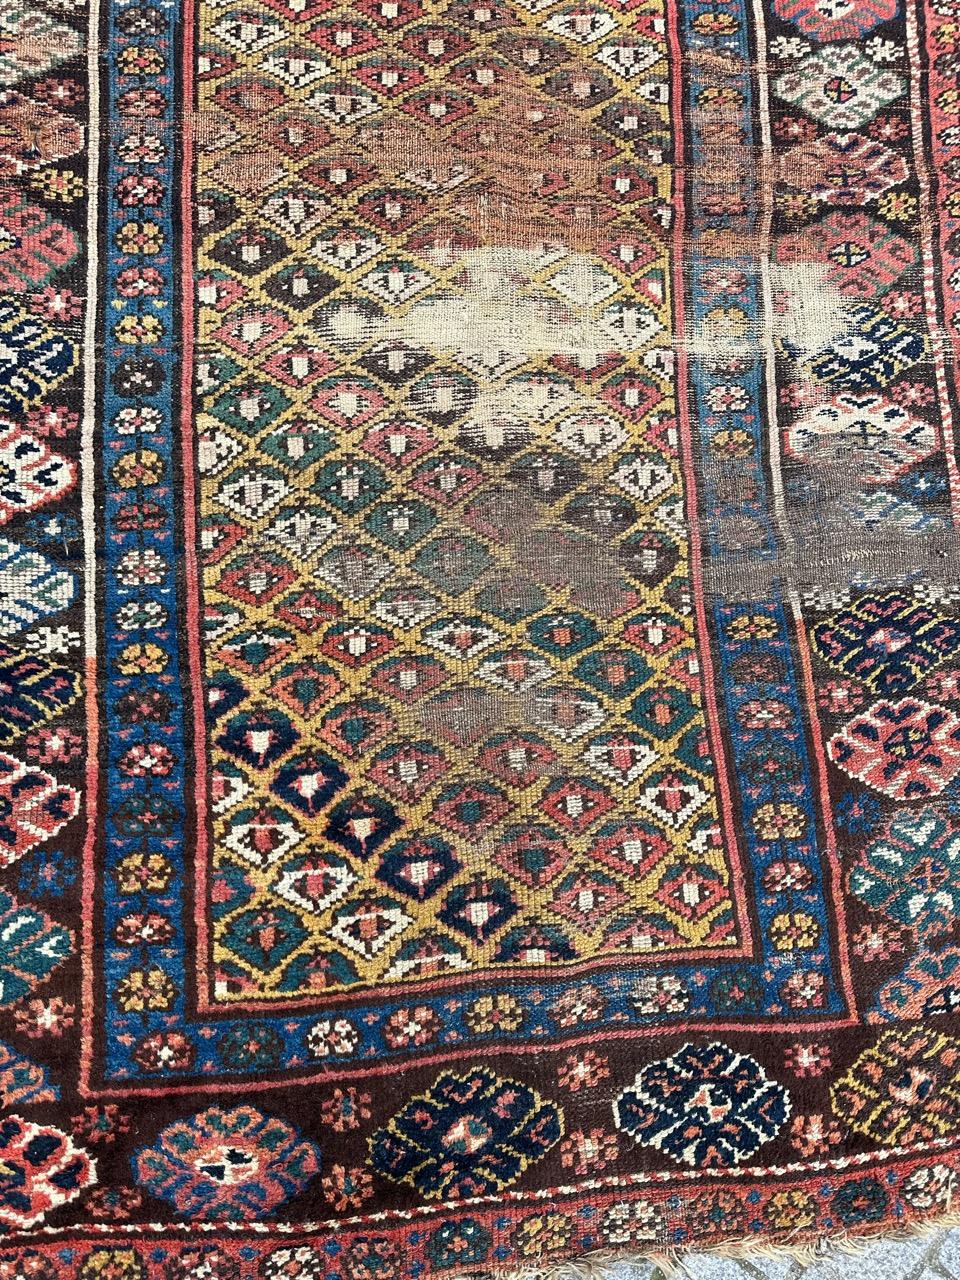 Schöner kurdischer Teppich aus dem 19. Jahrhundert mit schönem Stammesmuster und schönen natürlichen Farben mit einem gelben Feld mit einem sich wiederholenden Muster in Rot, Braun und Grün und blauen, braunen und roten Bordüren. Vollständig